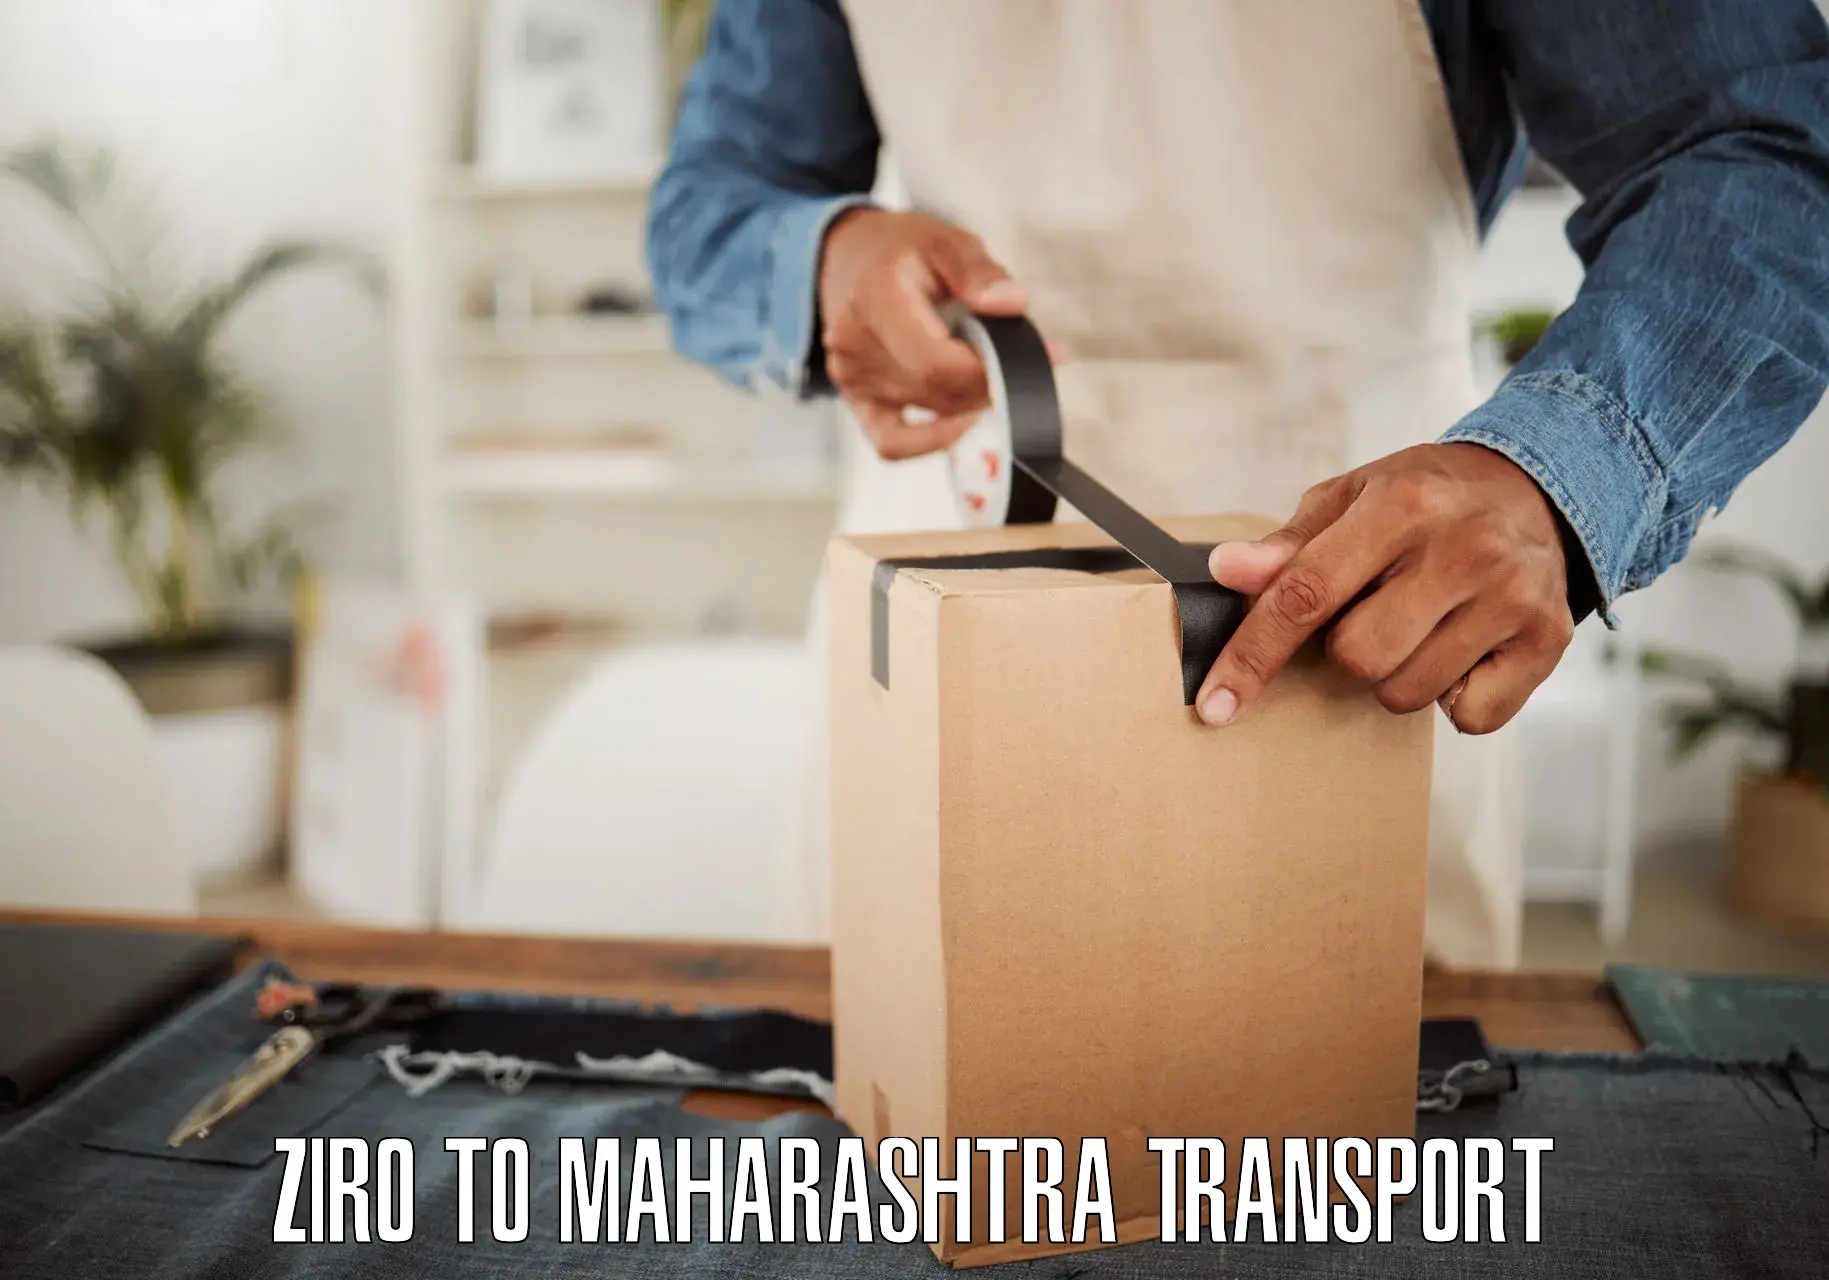 Delivery service Ziro to Maharashtra